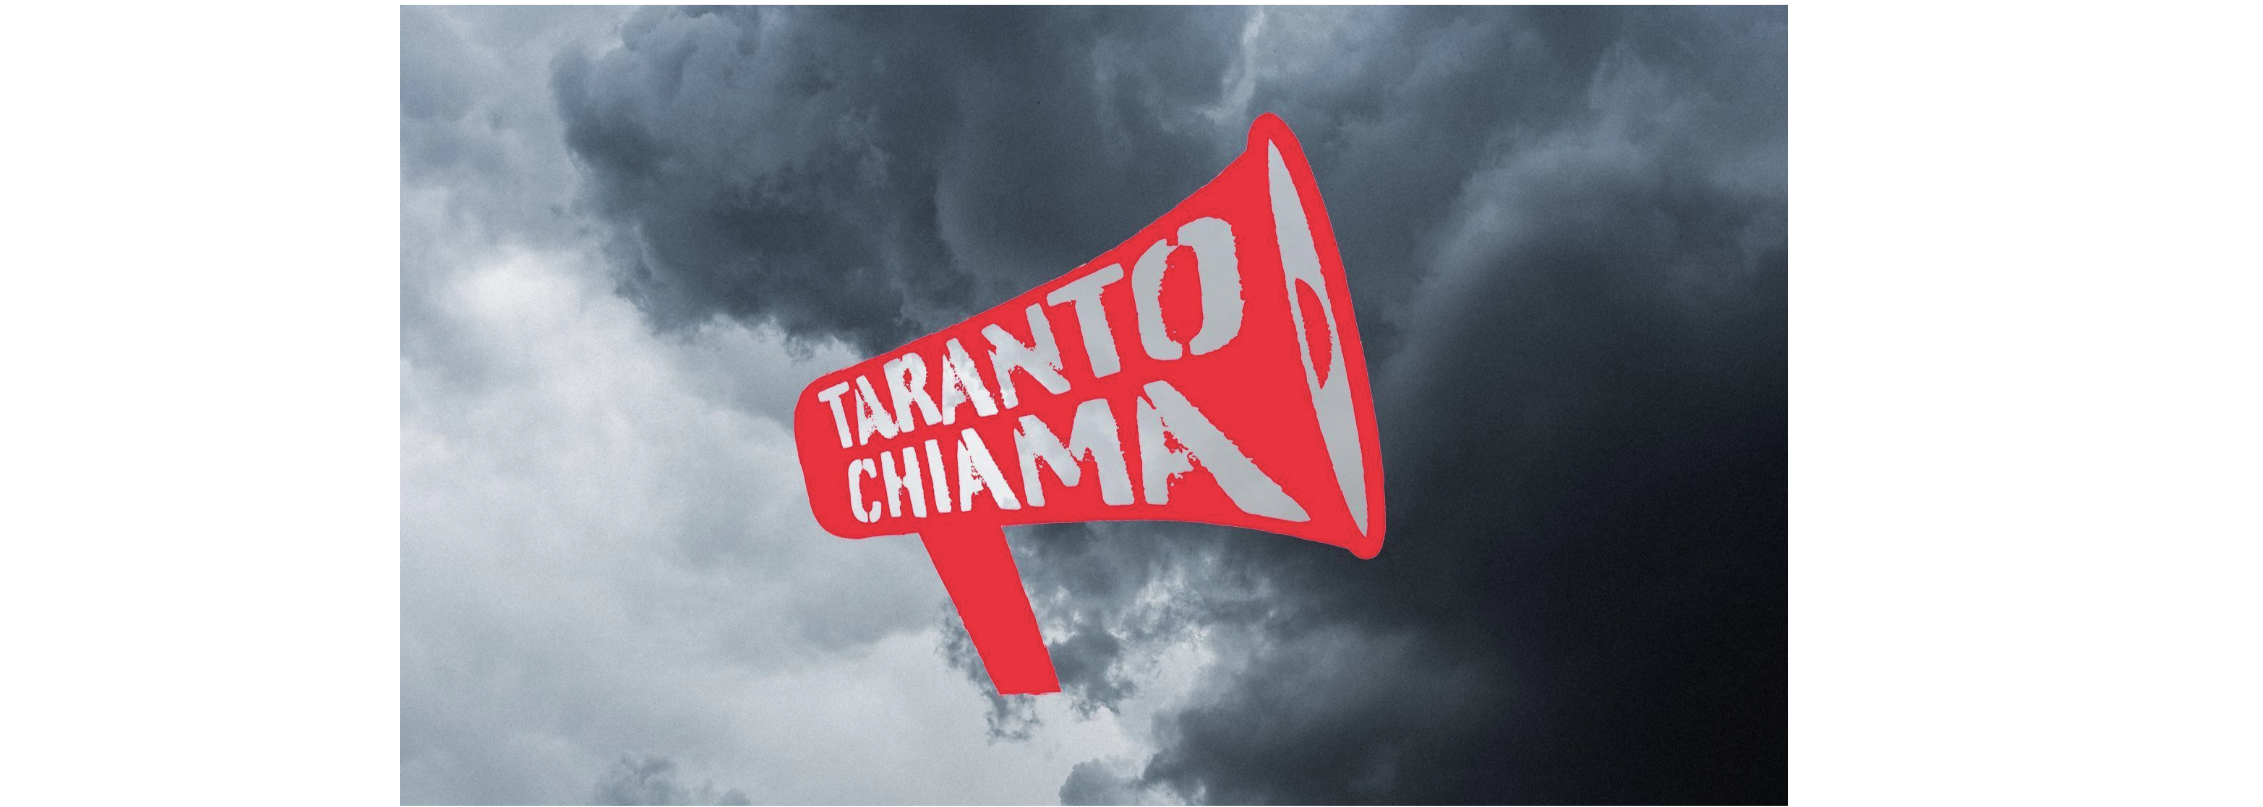 Anticipazione dalla video-inchiesta “Taranto chiama”